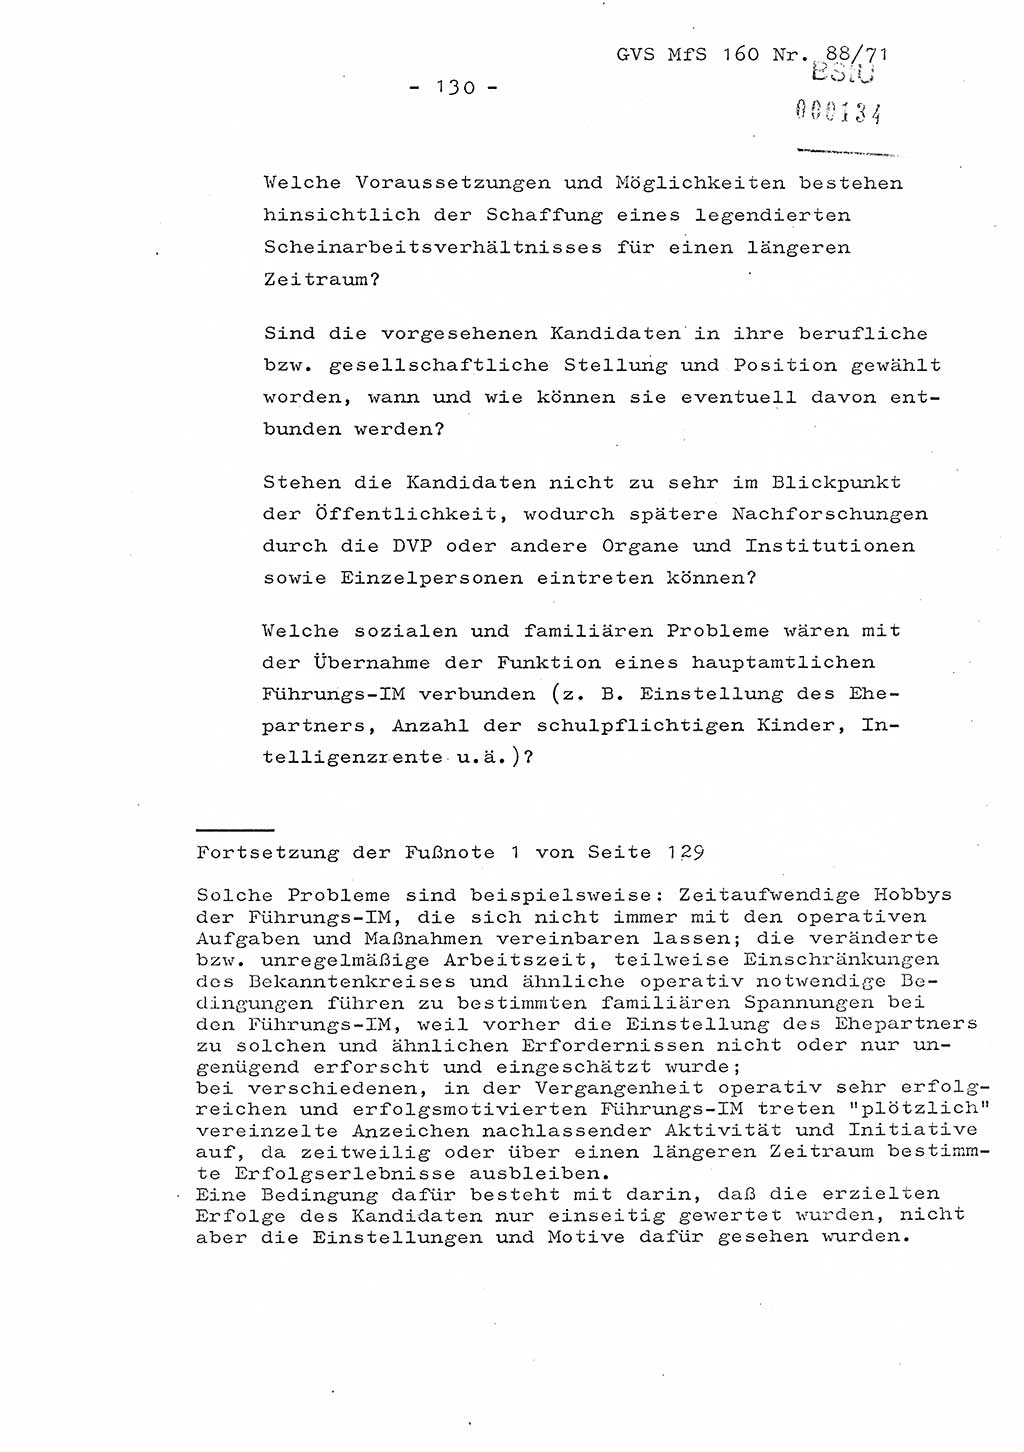 Dissertation Oberstleutnant Josef Schwarz (BV Schwerin), Major Fritz Amm (JHS), Hauptmann Peter Gräßler (JHS), Ministerium für Staatssicherheit (MfS) [Deutsche Demokratische Republik (DDR)], Juristische Hochschule (JHS), Geheime Verschlußsache (GVS) 160-88/71, Potsdam 1972, Seite 130 (Diss. MfS DDR JHS GVS 160-88/71 1972, S. 130)